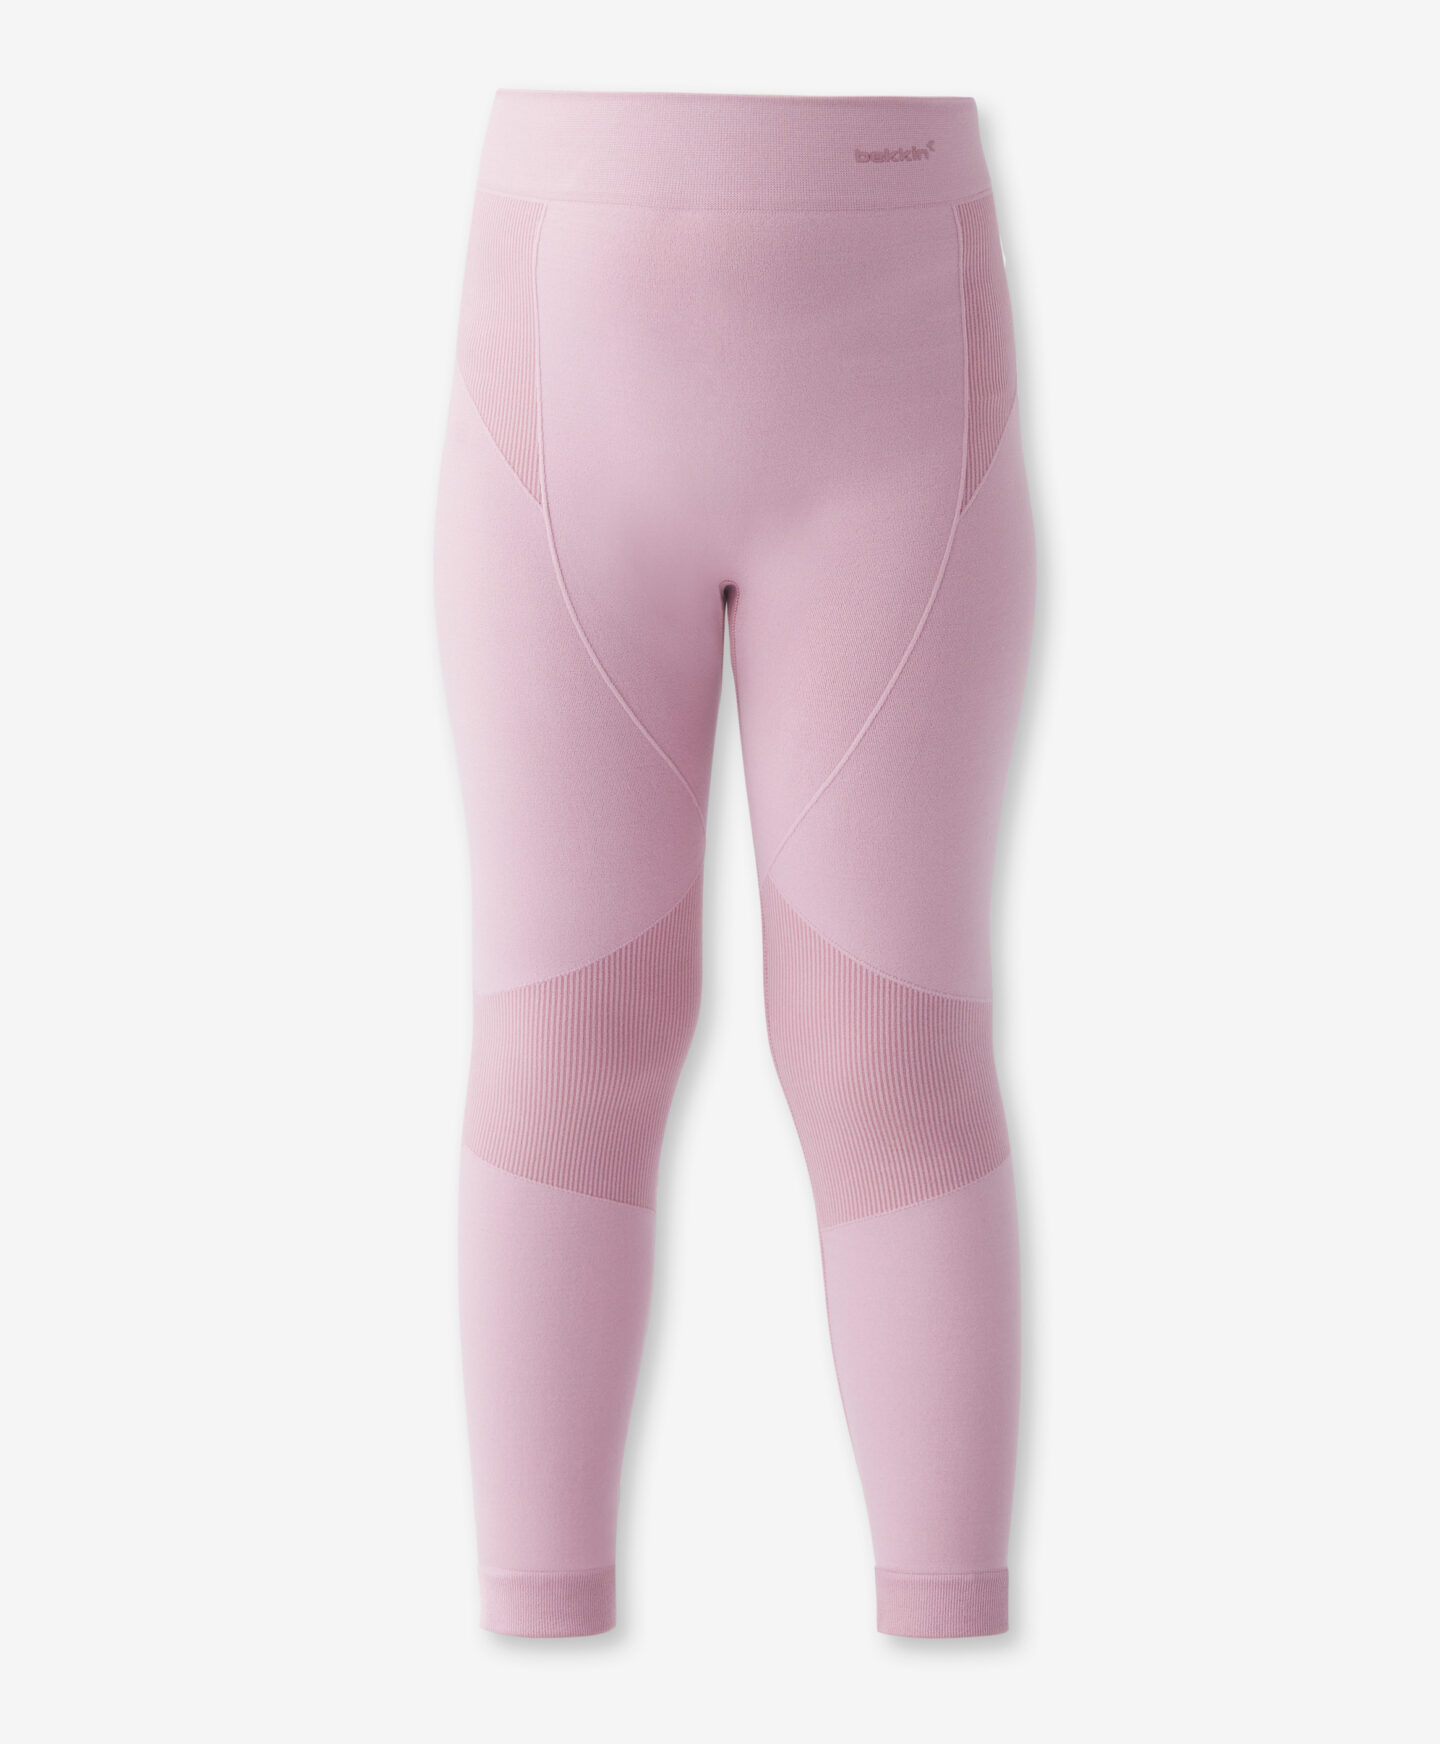 Colanți termo, pentru fetițe, Bekkin, culoare: roz, mărimi: 92-128 cm